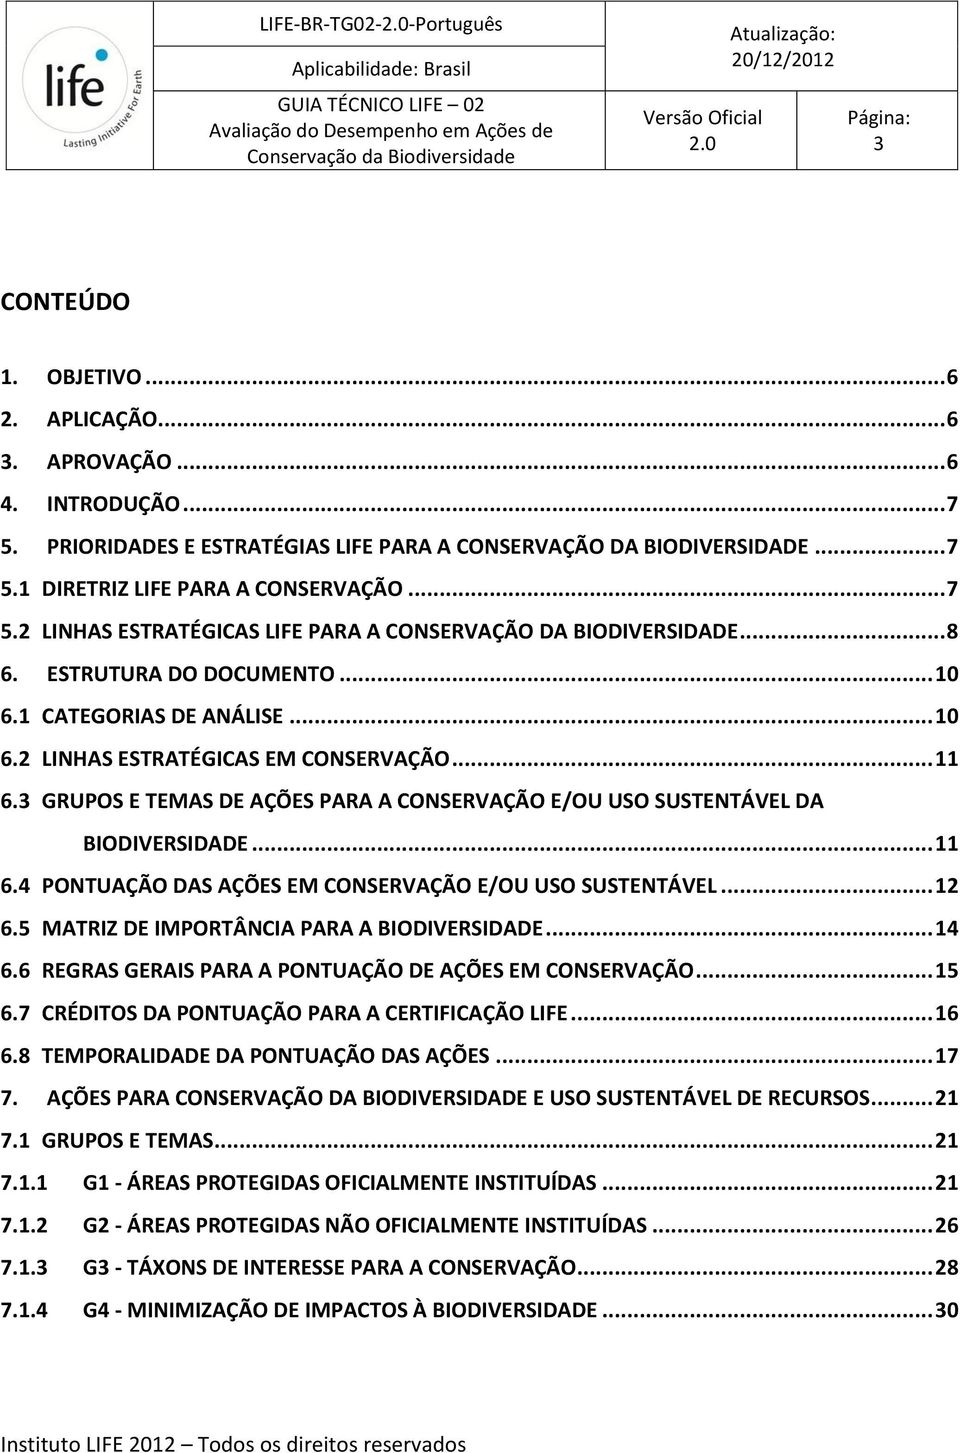 ESTRUTURA DO DOCUMENTO... 10 6.1 CATEGORIAS DE ANÁLISE... 10 6.2 LINHAS ESTRATÉGICAS EM CONSERVAÇÃO... 11 6.3 GRUPOS E TEMAS DE AÇÕES PARA A CONSERVAÇÃO E/OU USO SUSTENTÁVEL DA BIODIVERSIDADE... 11 6.4 PONTUAÇÃO DAS AÇÕES EM CONSERVAÇÃO E/OU USO SUSTENTÁVEL.